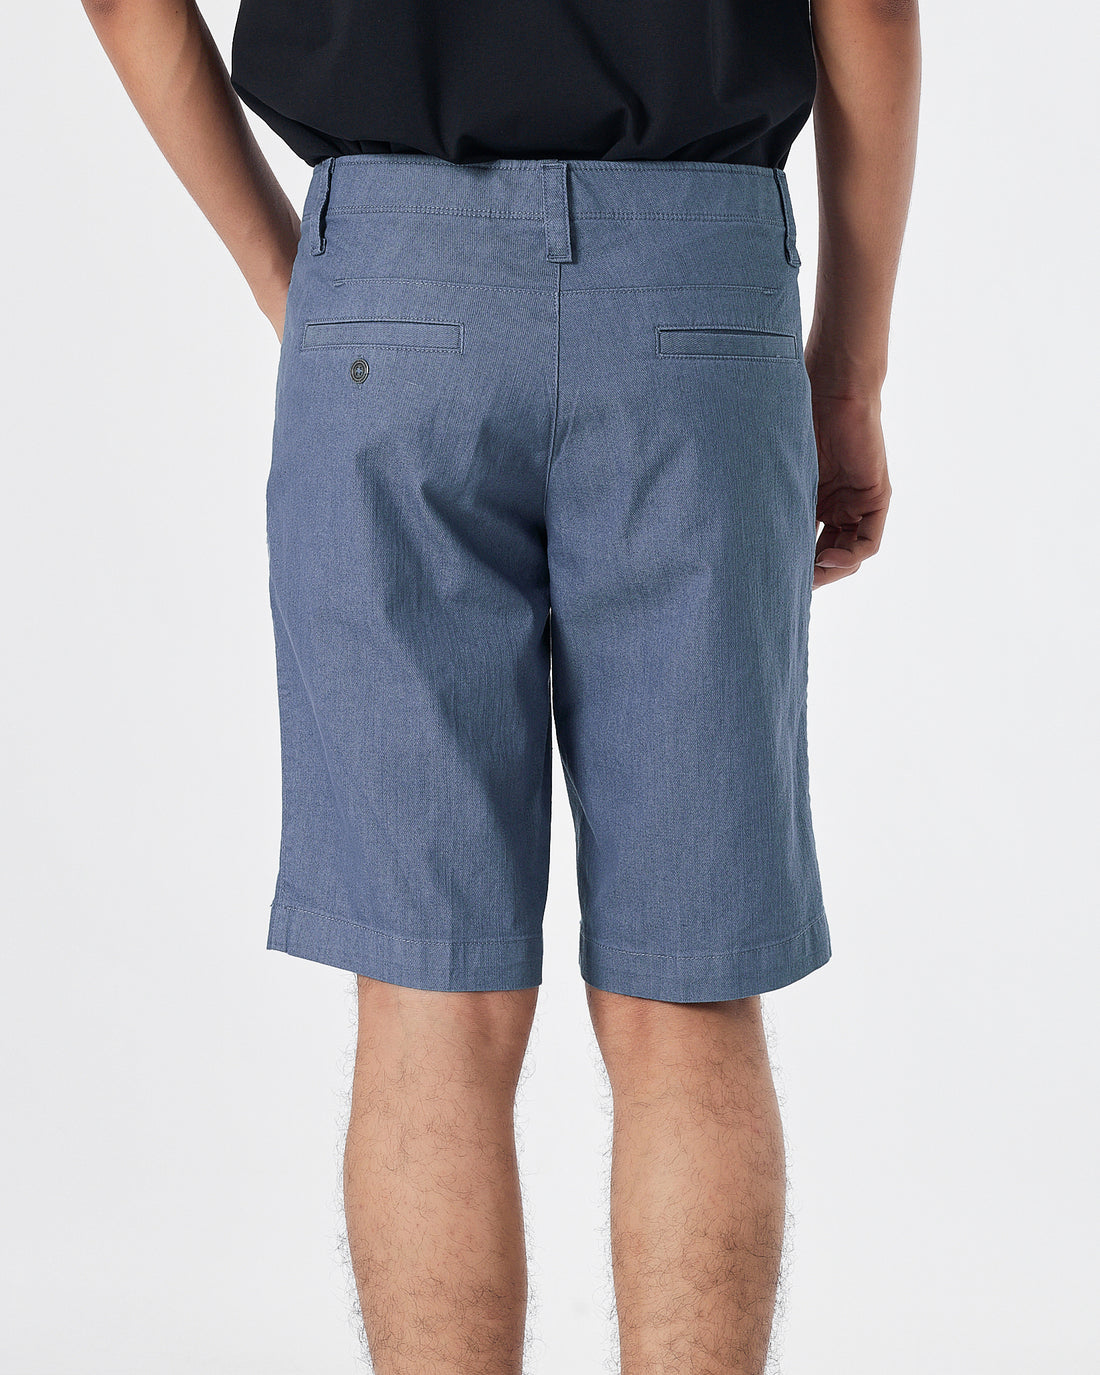 UA Men Blue Short Pants 18.50